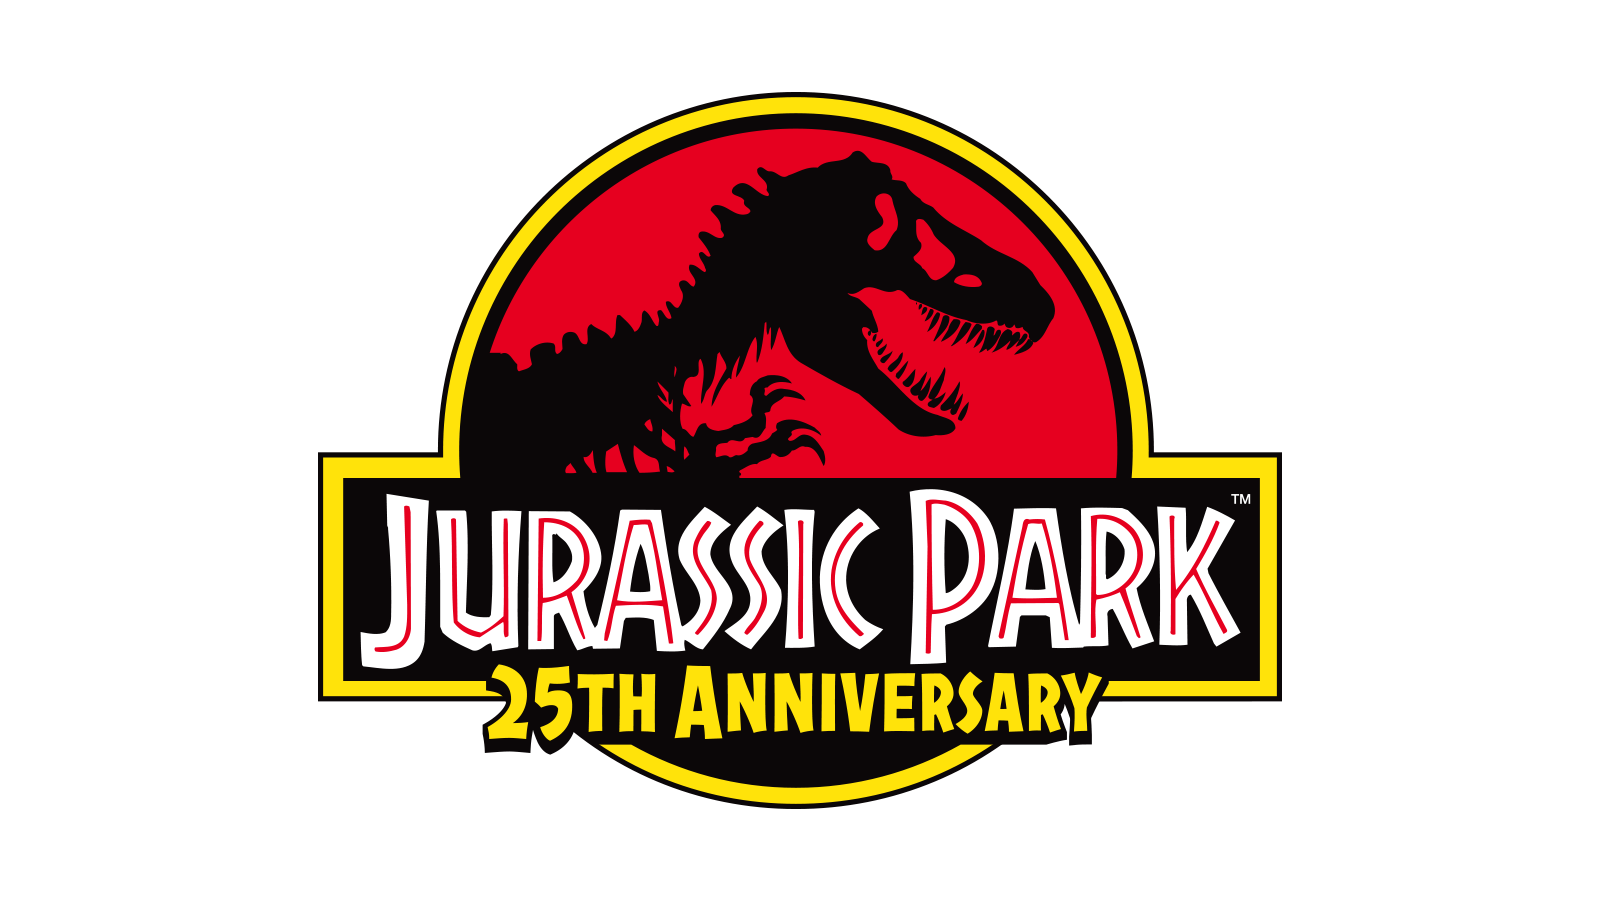 自1993年以来,伴随着影片《侏罗纪公园》1-3部